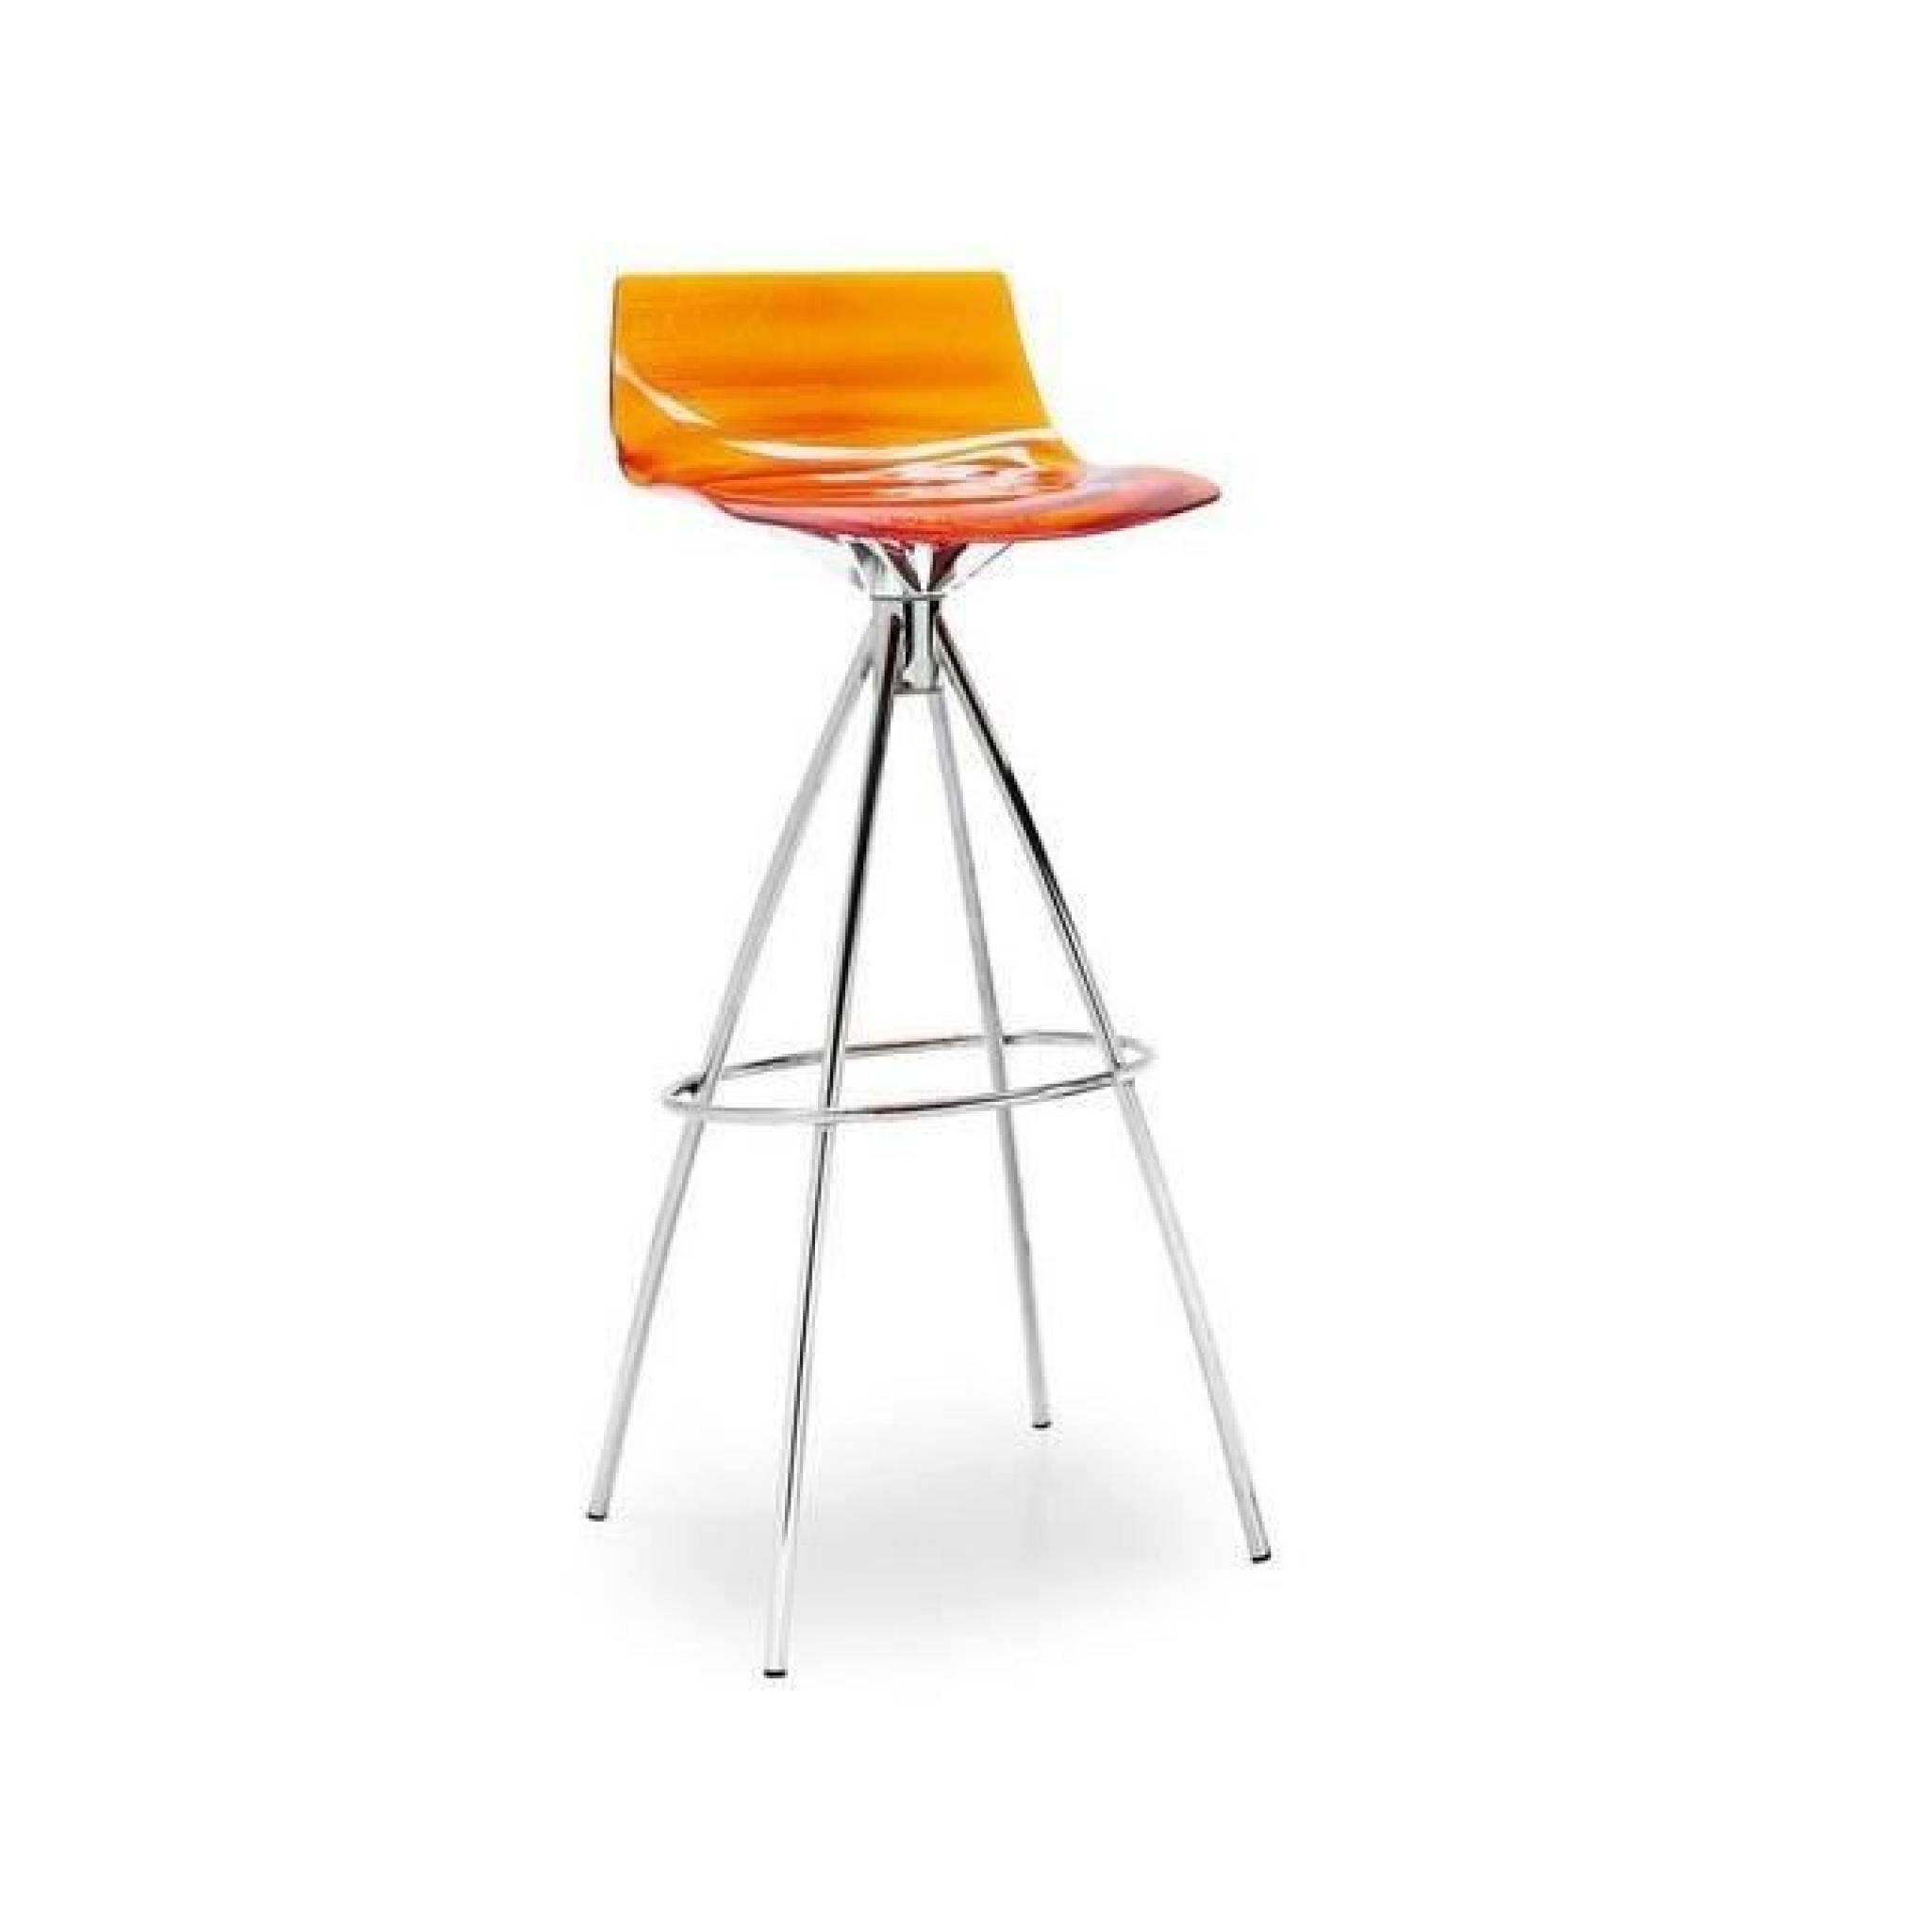 Chaise de bar design l'EAU de CALLIGARIS orange transparente pas cher